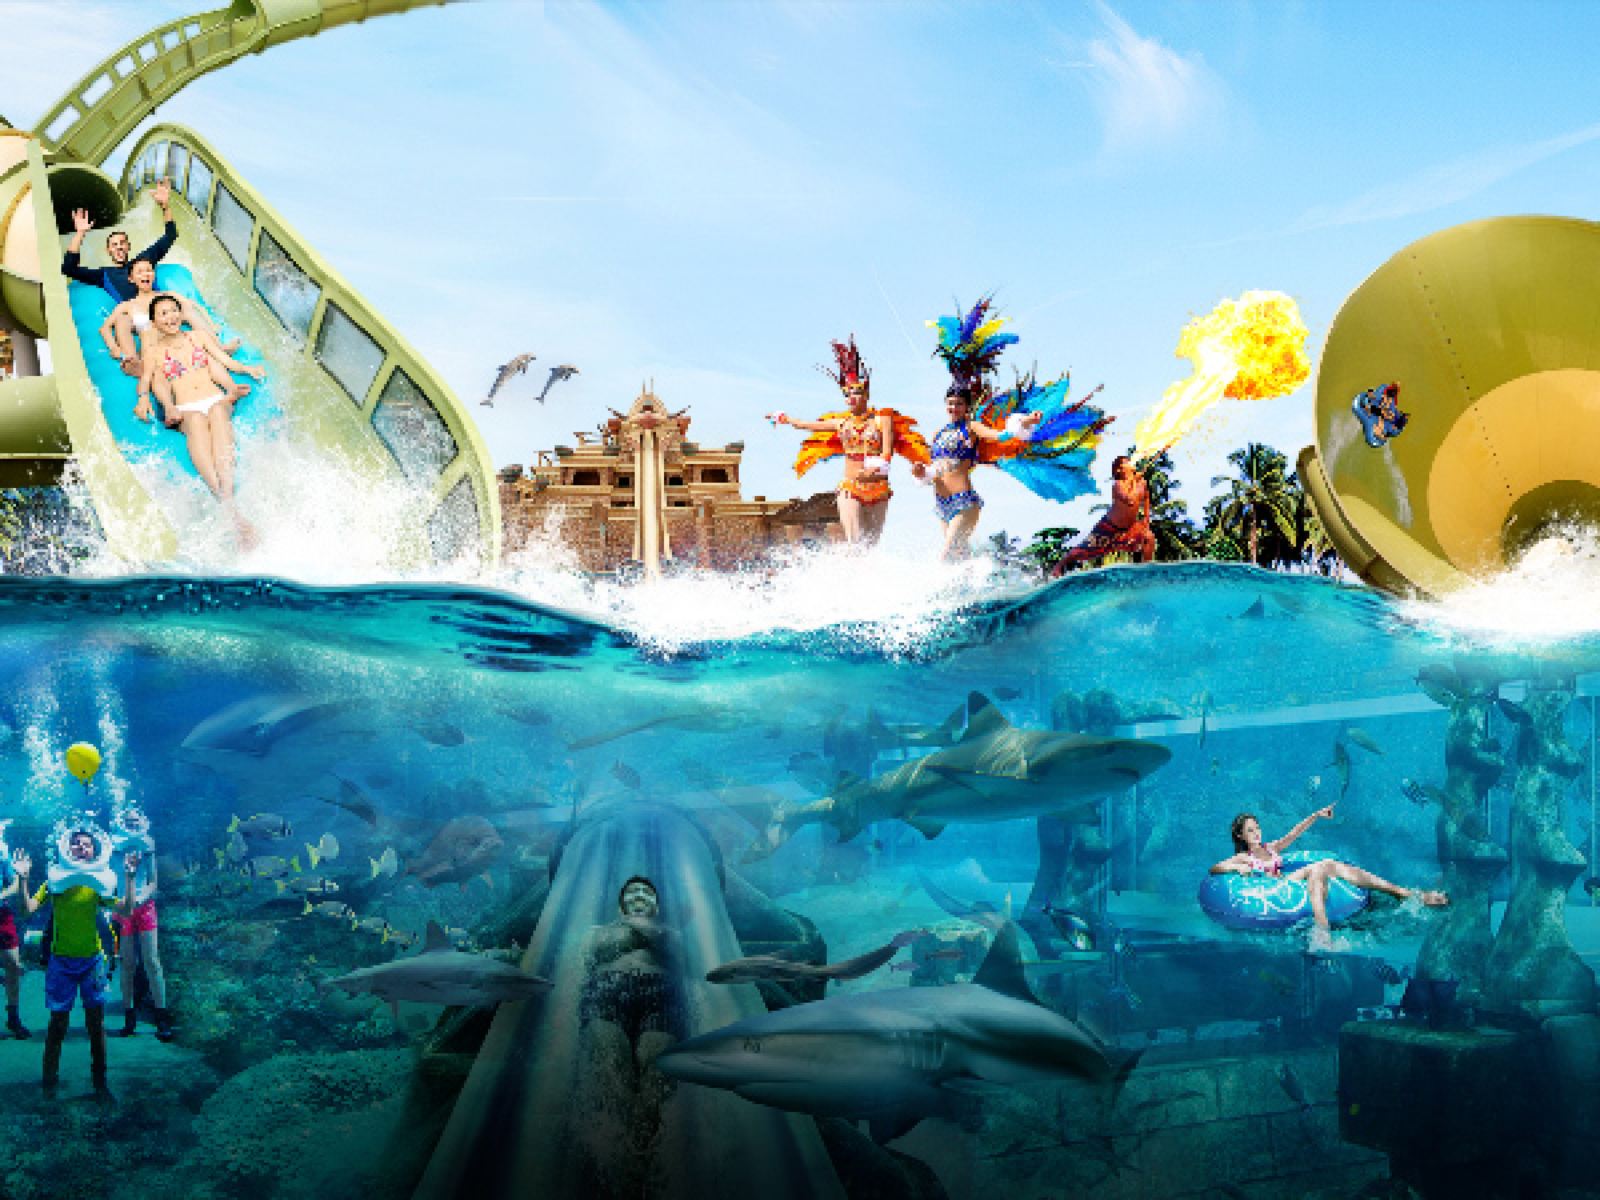 2023徐州乐园加勒比水世界玩乐攻略,这里水上游乐项目适合不同年... 【去哪儿攻略】